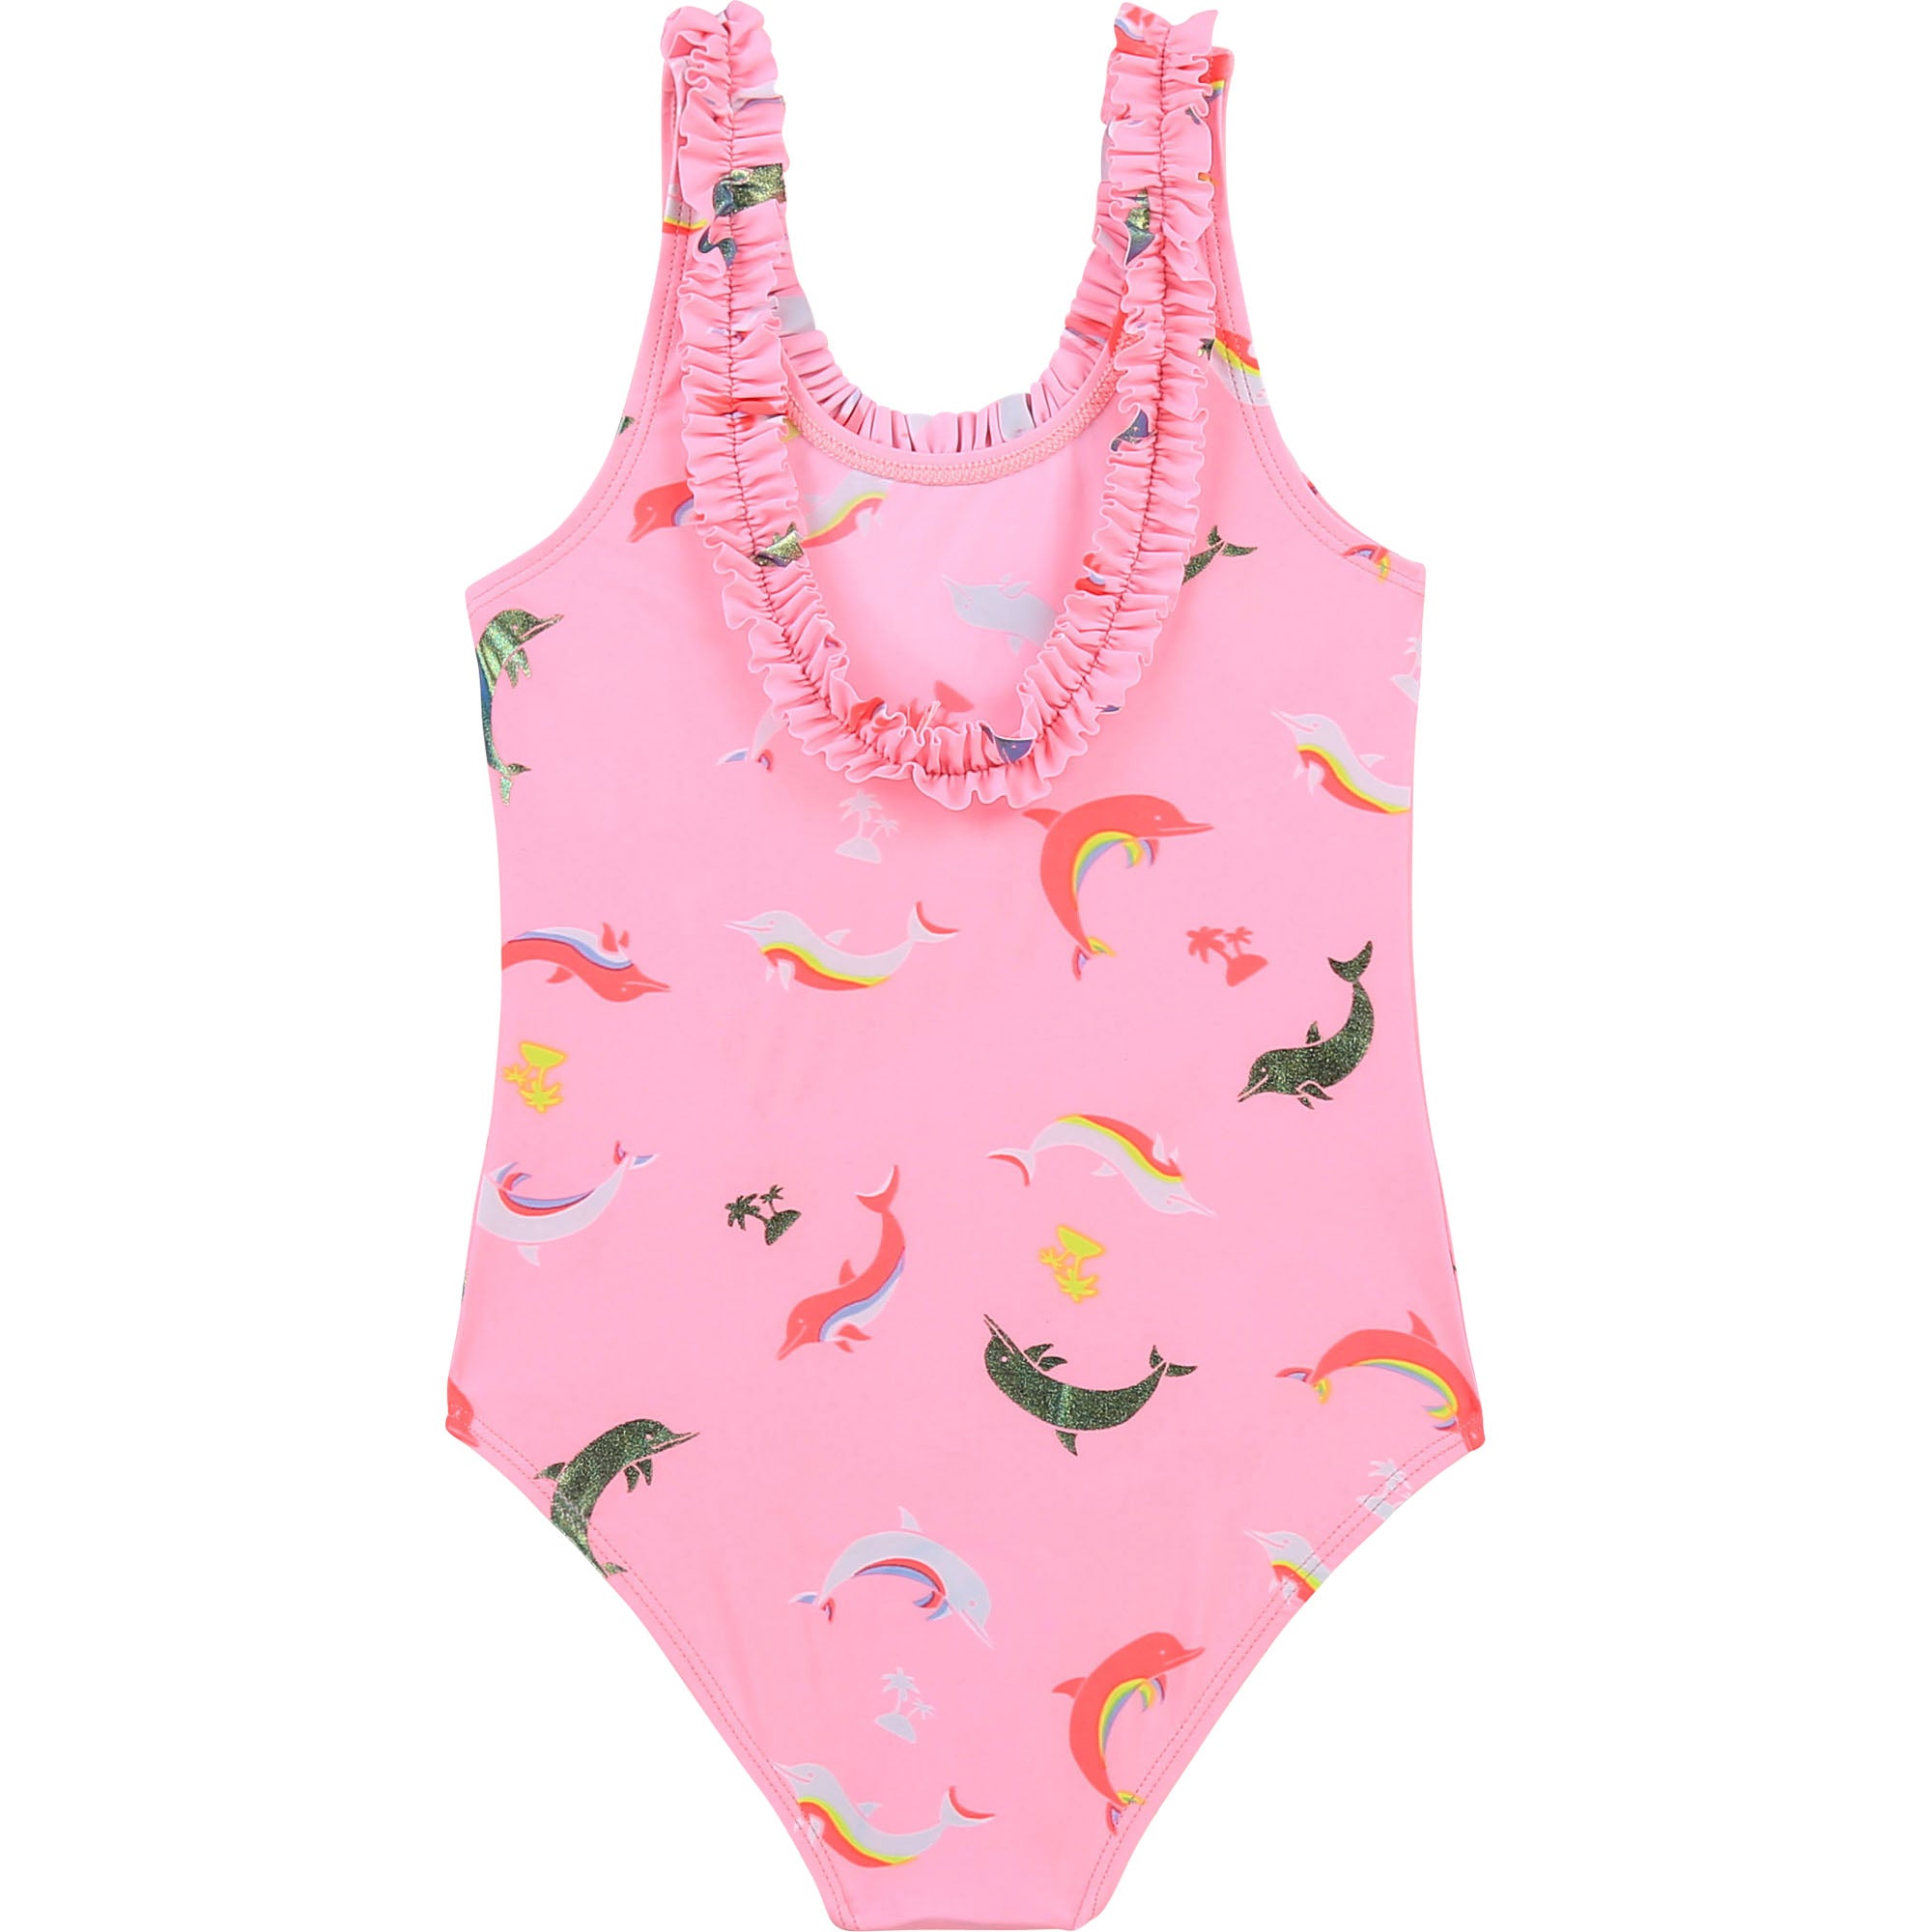 Girls Pink Printing Swimsuit